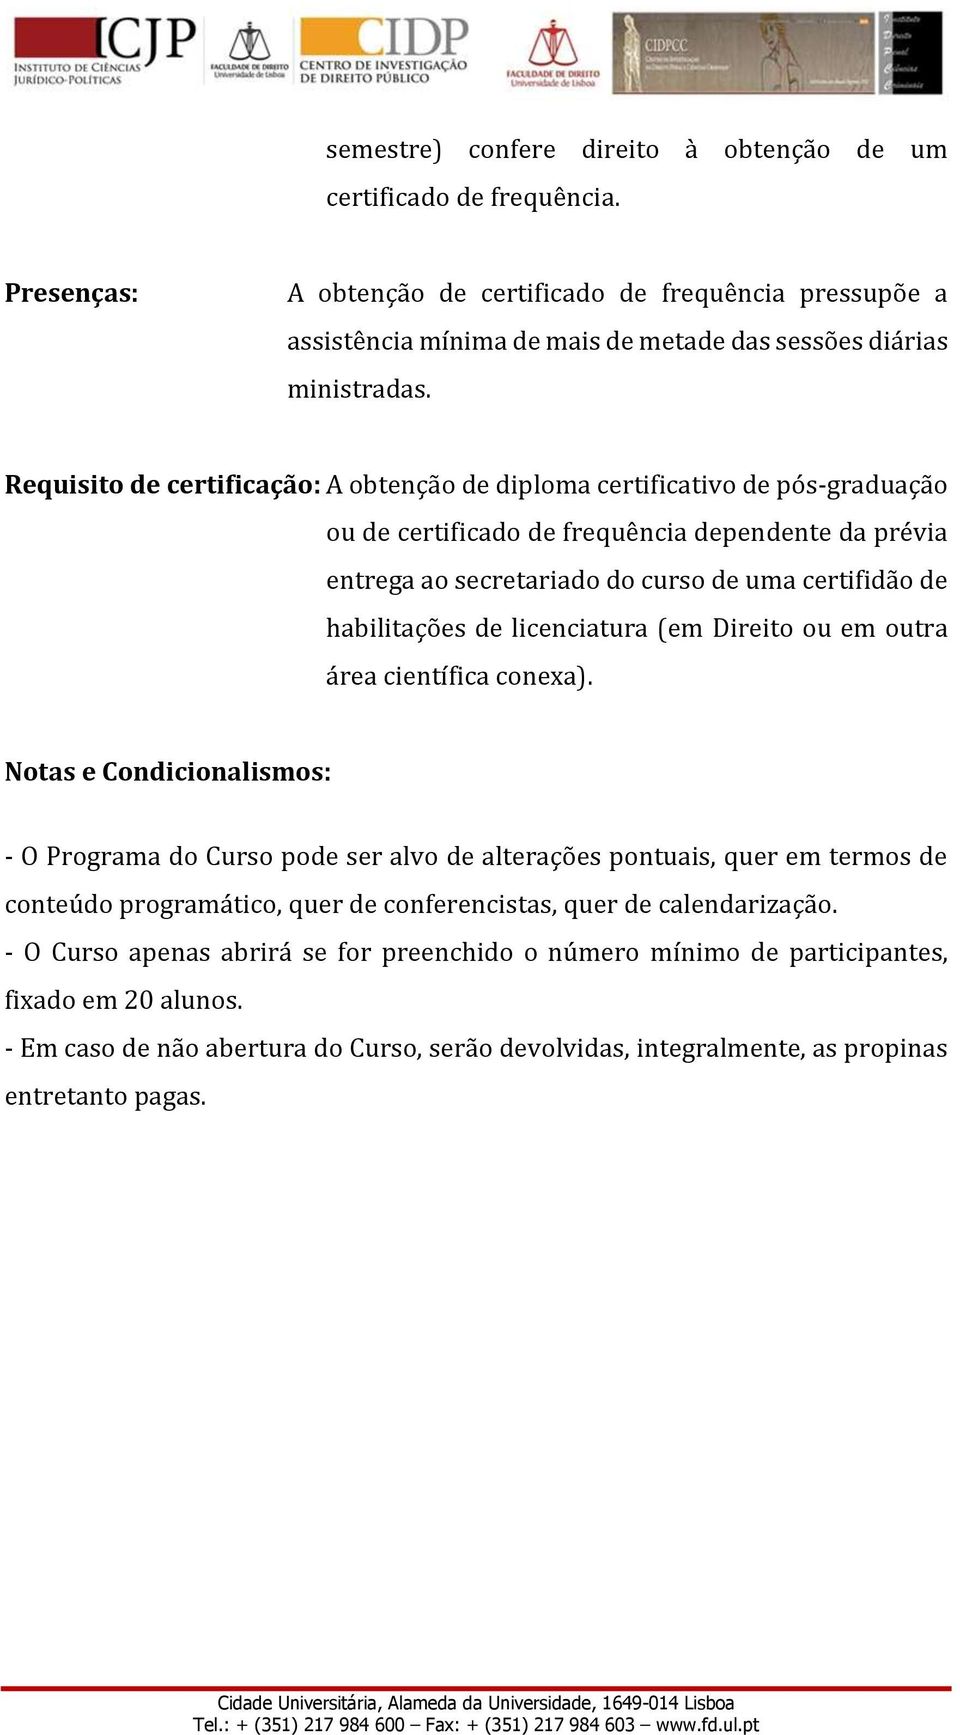 Requisito de certificação: A obtenção de diploma certificativo de pós-graduação ou de certificado de frequência dependente da prévia entrega ao secretariado do curso de uma certifidão de habilitações